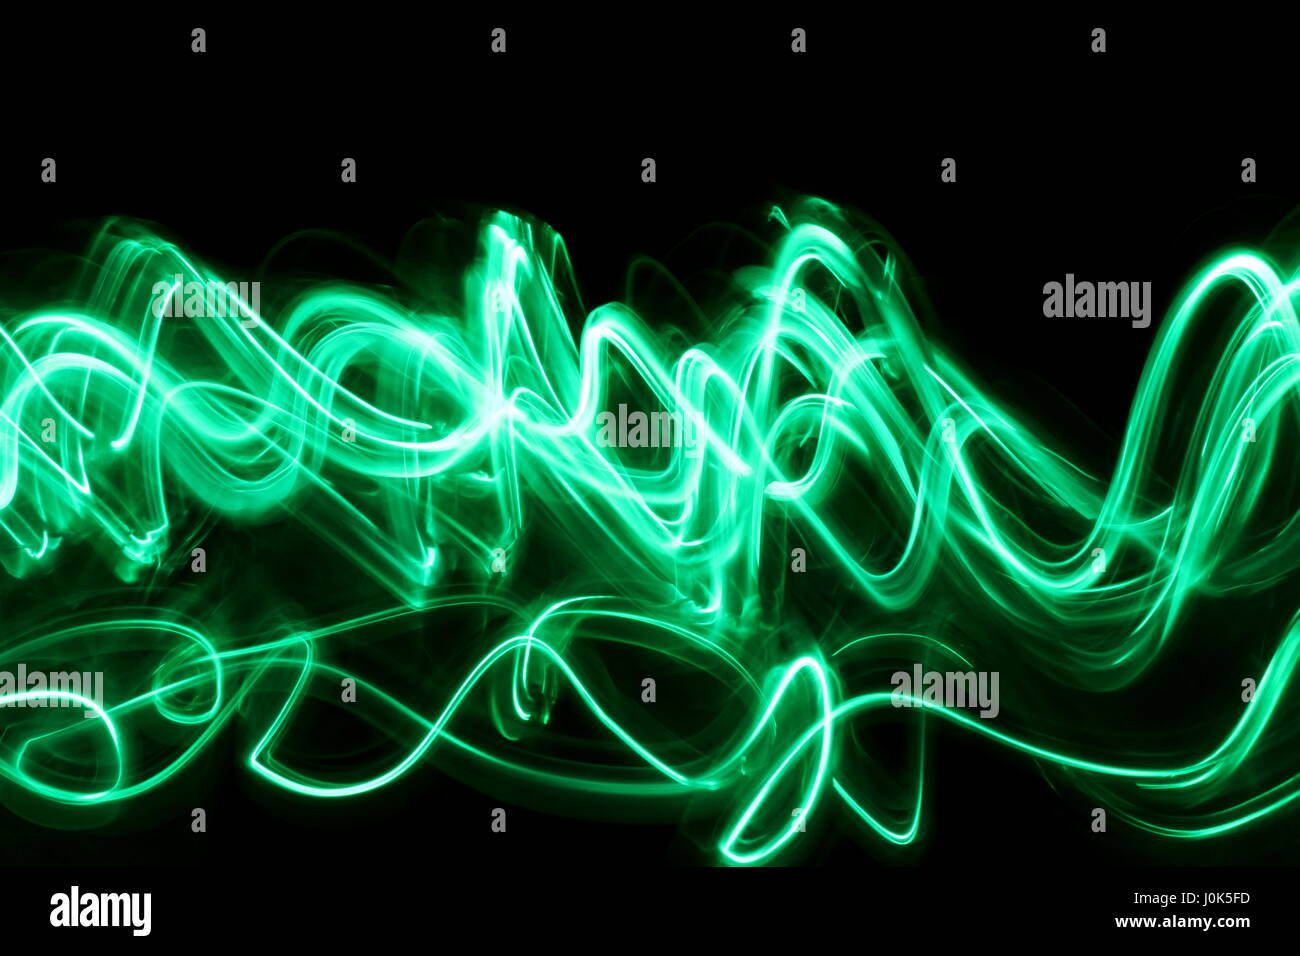 Una lunga esposizione fotografia di neon di colore verde in una configurazione astratta contro uno sfondo nero. Luce fotografia pittura, di colore in astratto Foto Stock